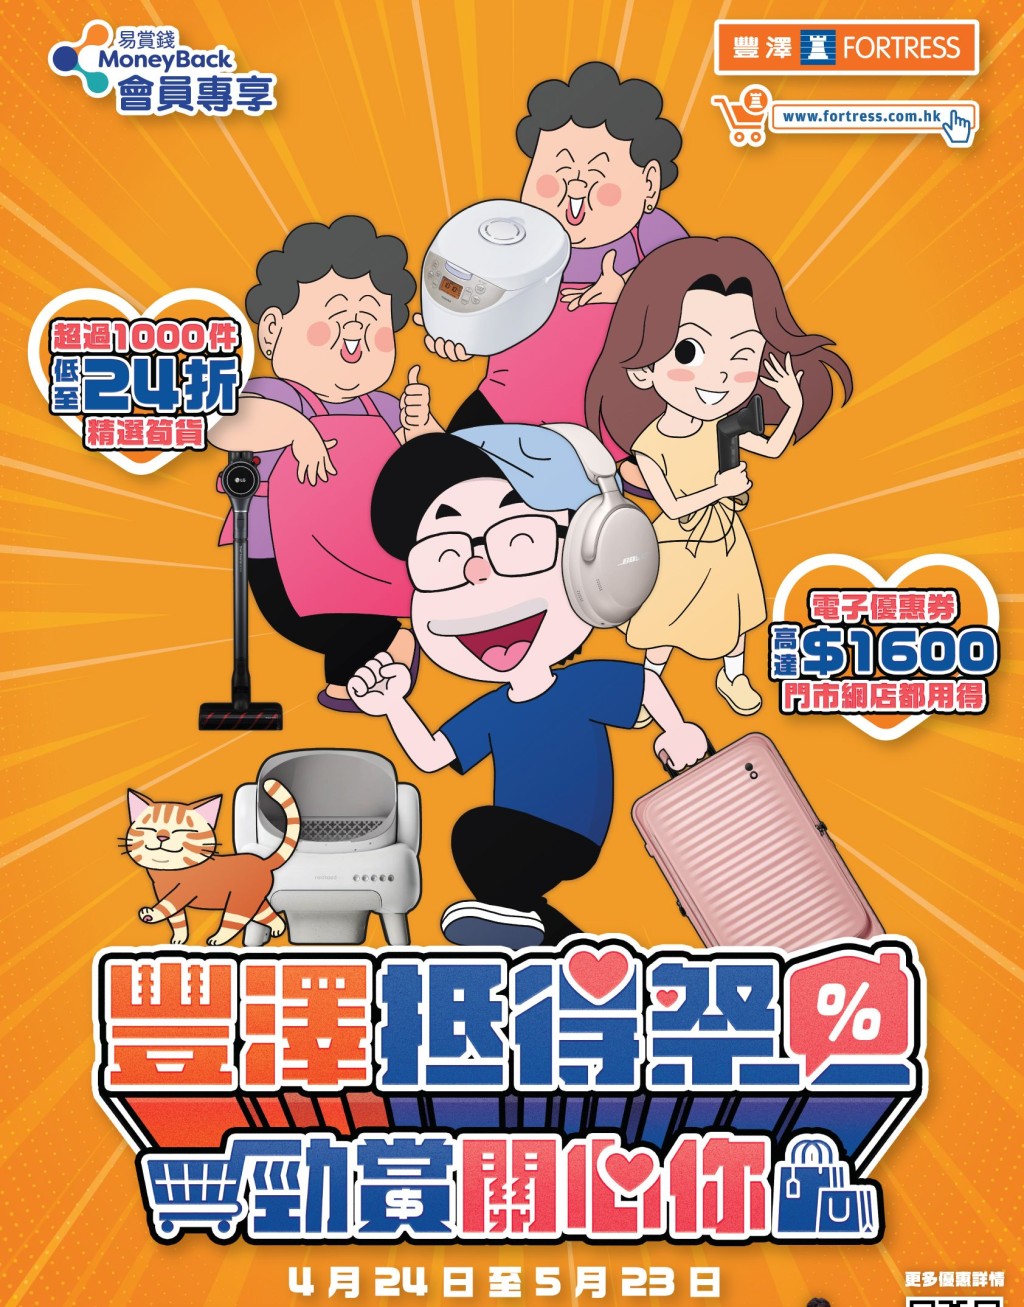 豐澤由即日起4月24日至5月23日推出的「豐澤抵得祭」，將以震撼優惠回歸全線門市及網店。